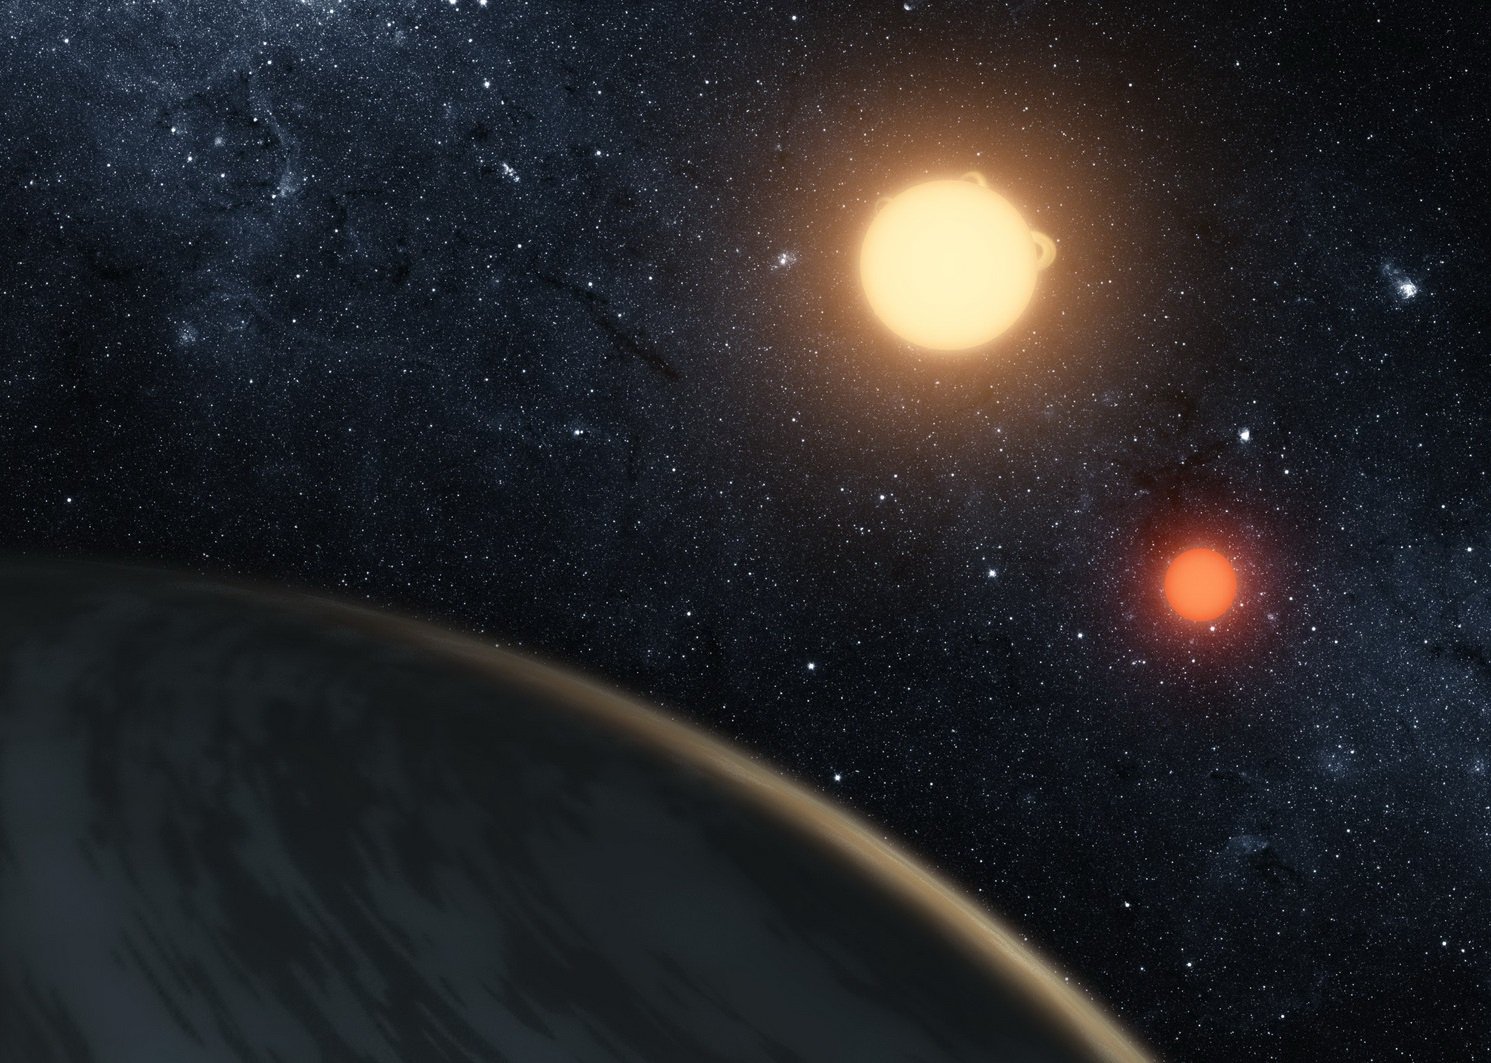 IA ha superato gli astronomi in efficienza determinare la sopravvivenza di pianeti extrasolari